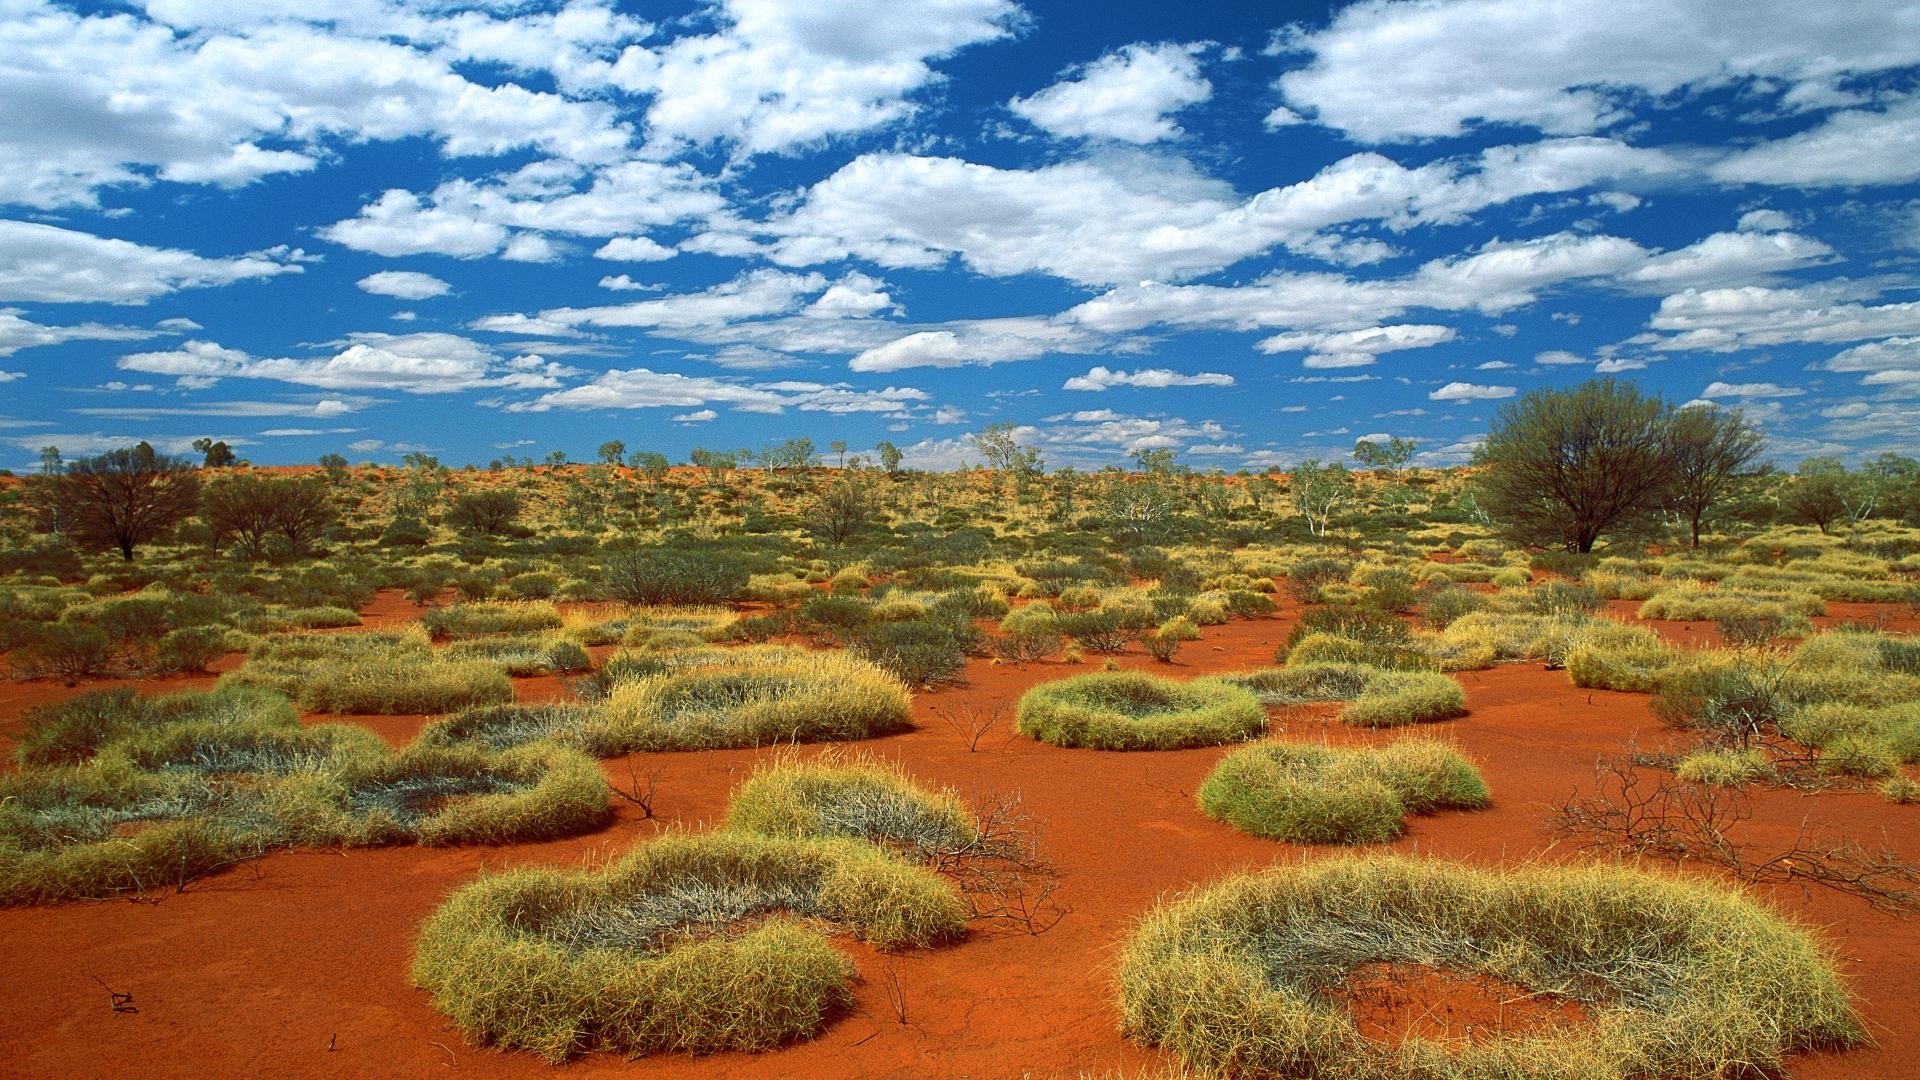 Hd Hq Desert Wallpapers Download Hd Hq Desert Wallpapers - Australia Desert - HD Wallpaper 